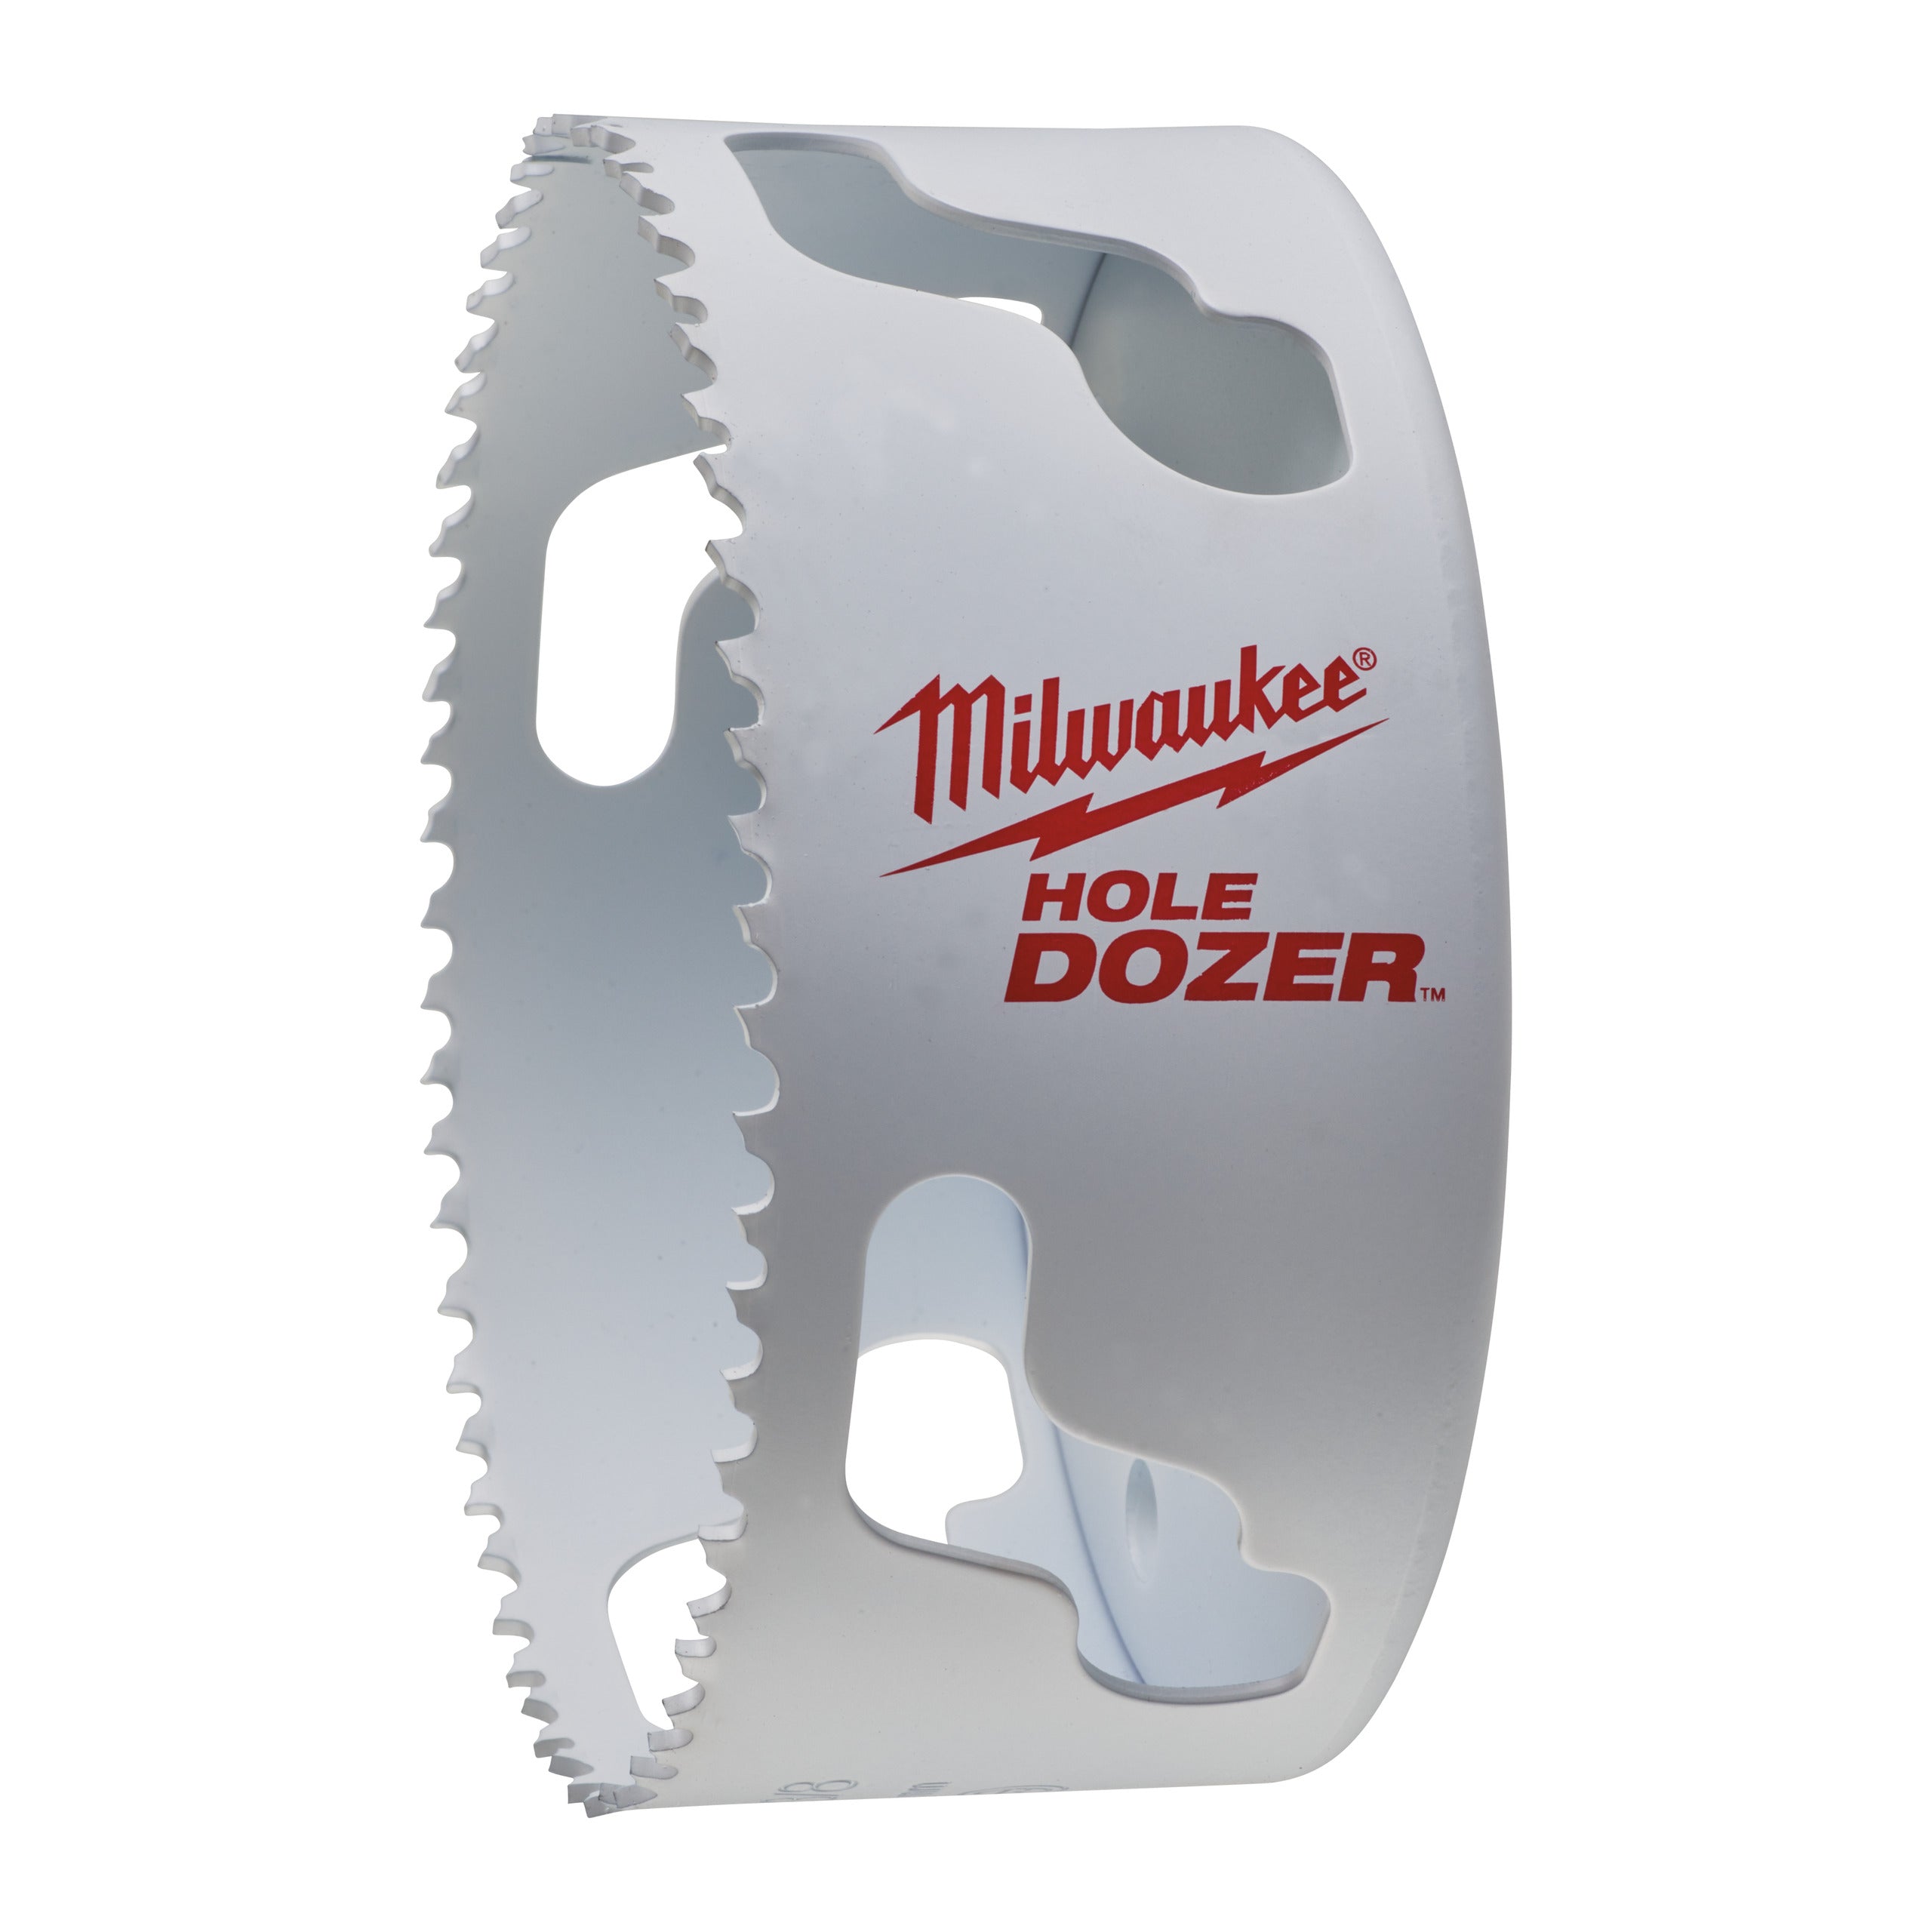 Carotă Milwaukee HOLE DOZER™ bi-metal Ø111 mm 49560227